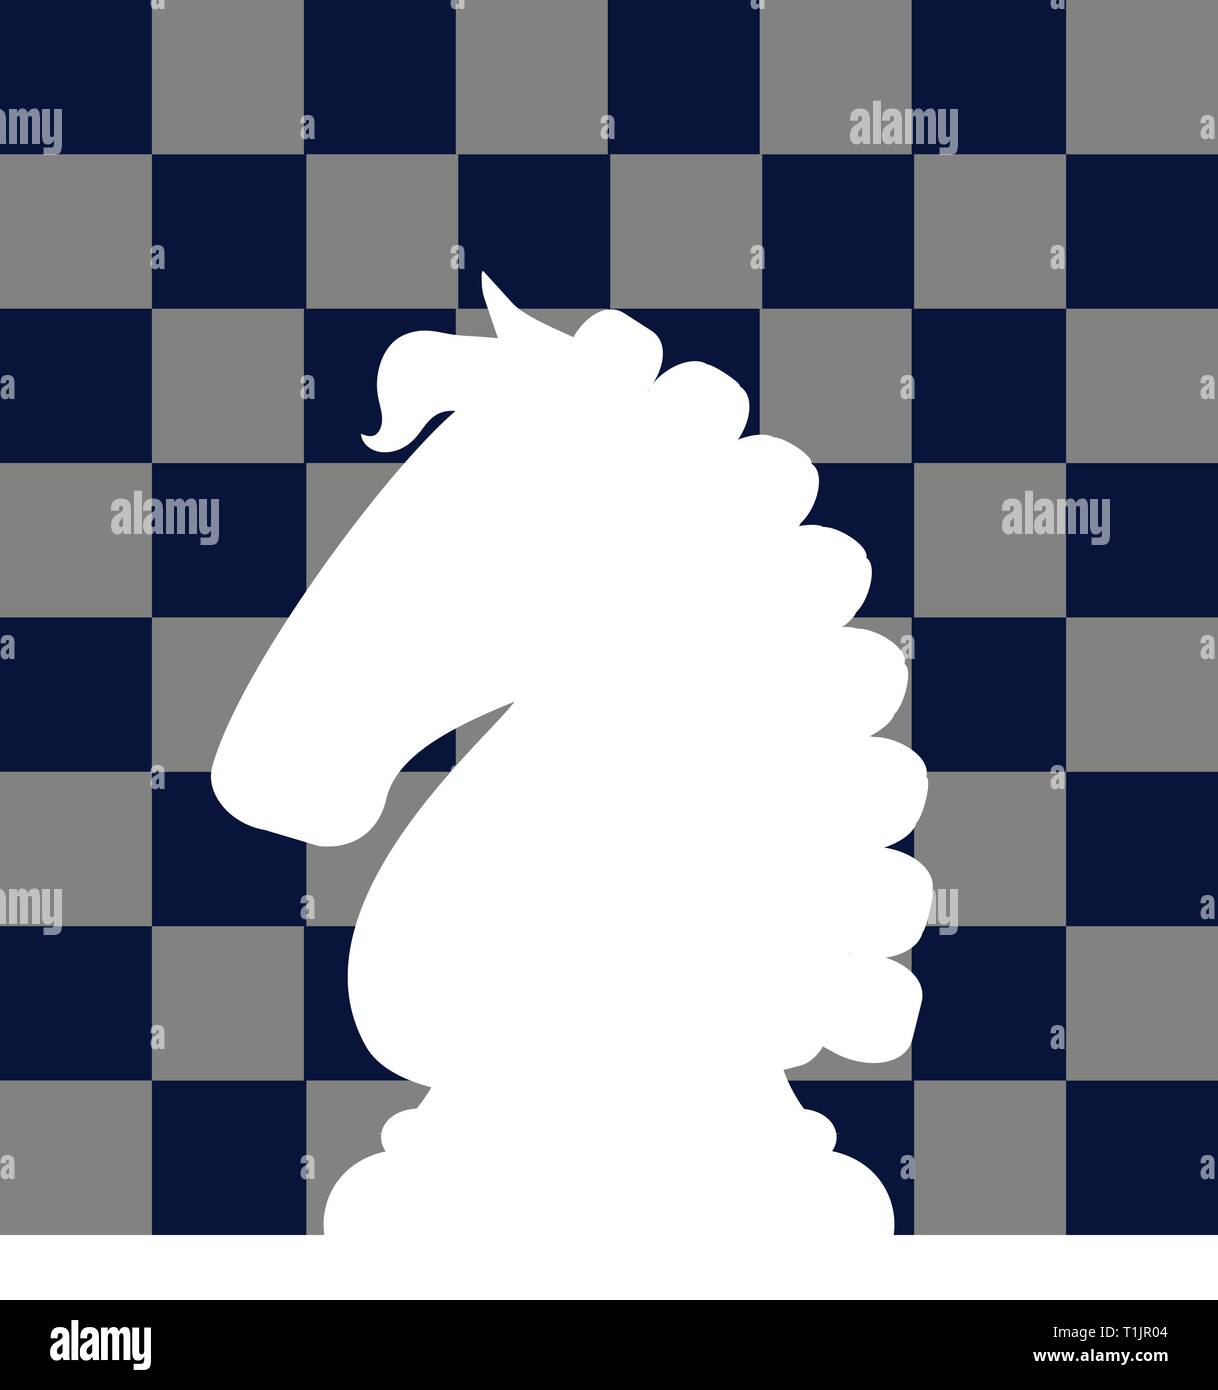 Échecs de chevalier blanc inversé pièce de jeu d'image d'arrière-plan Illustration de Vecteur